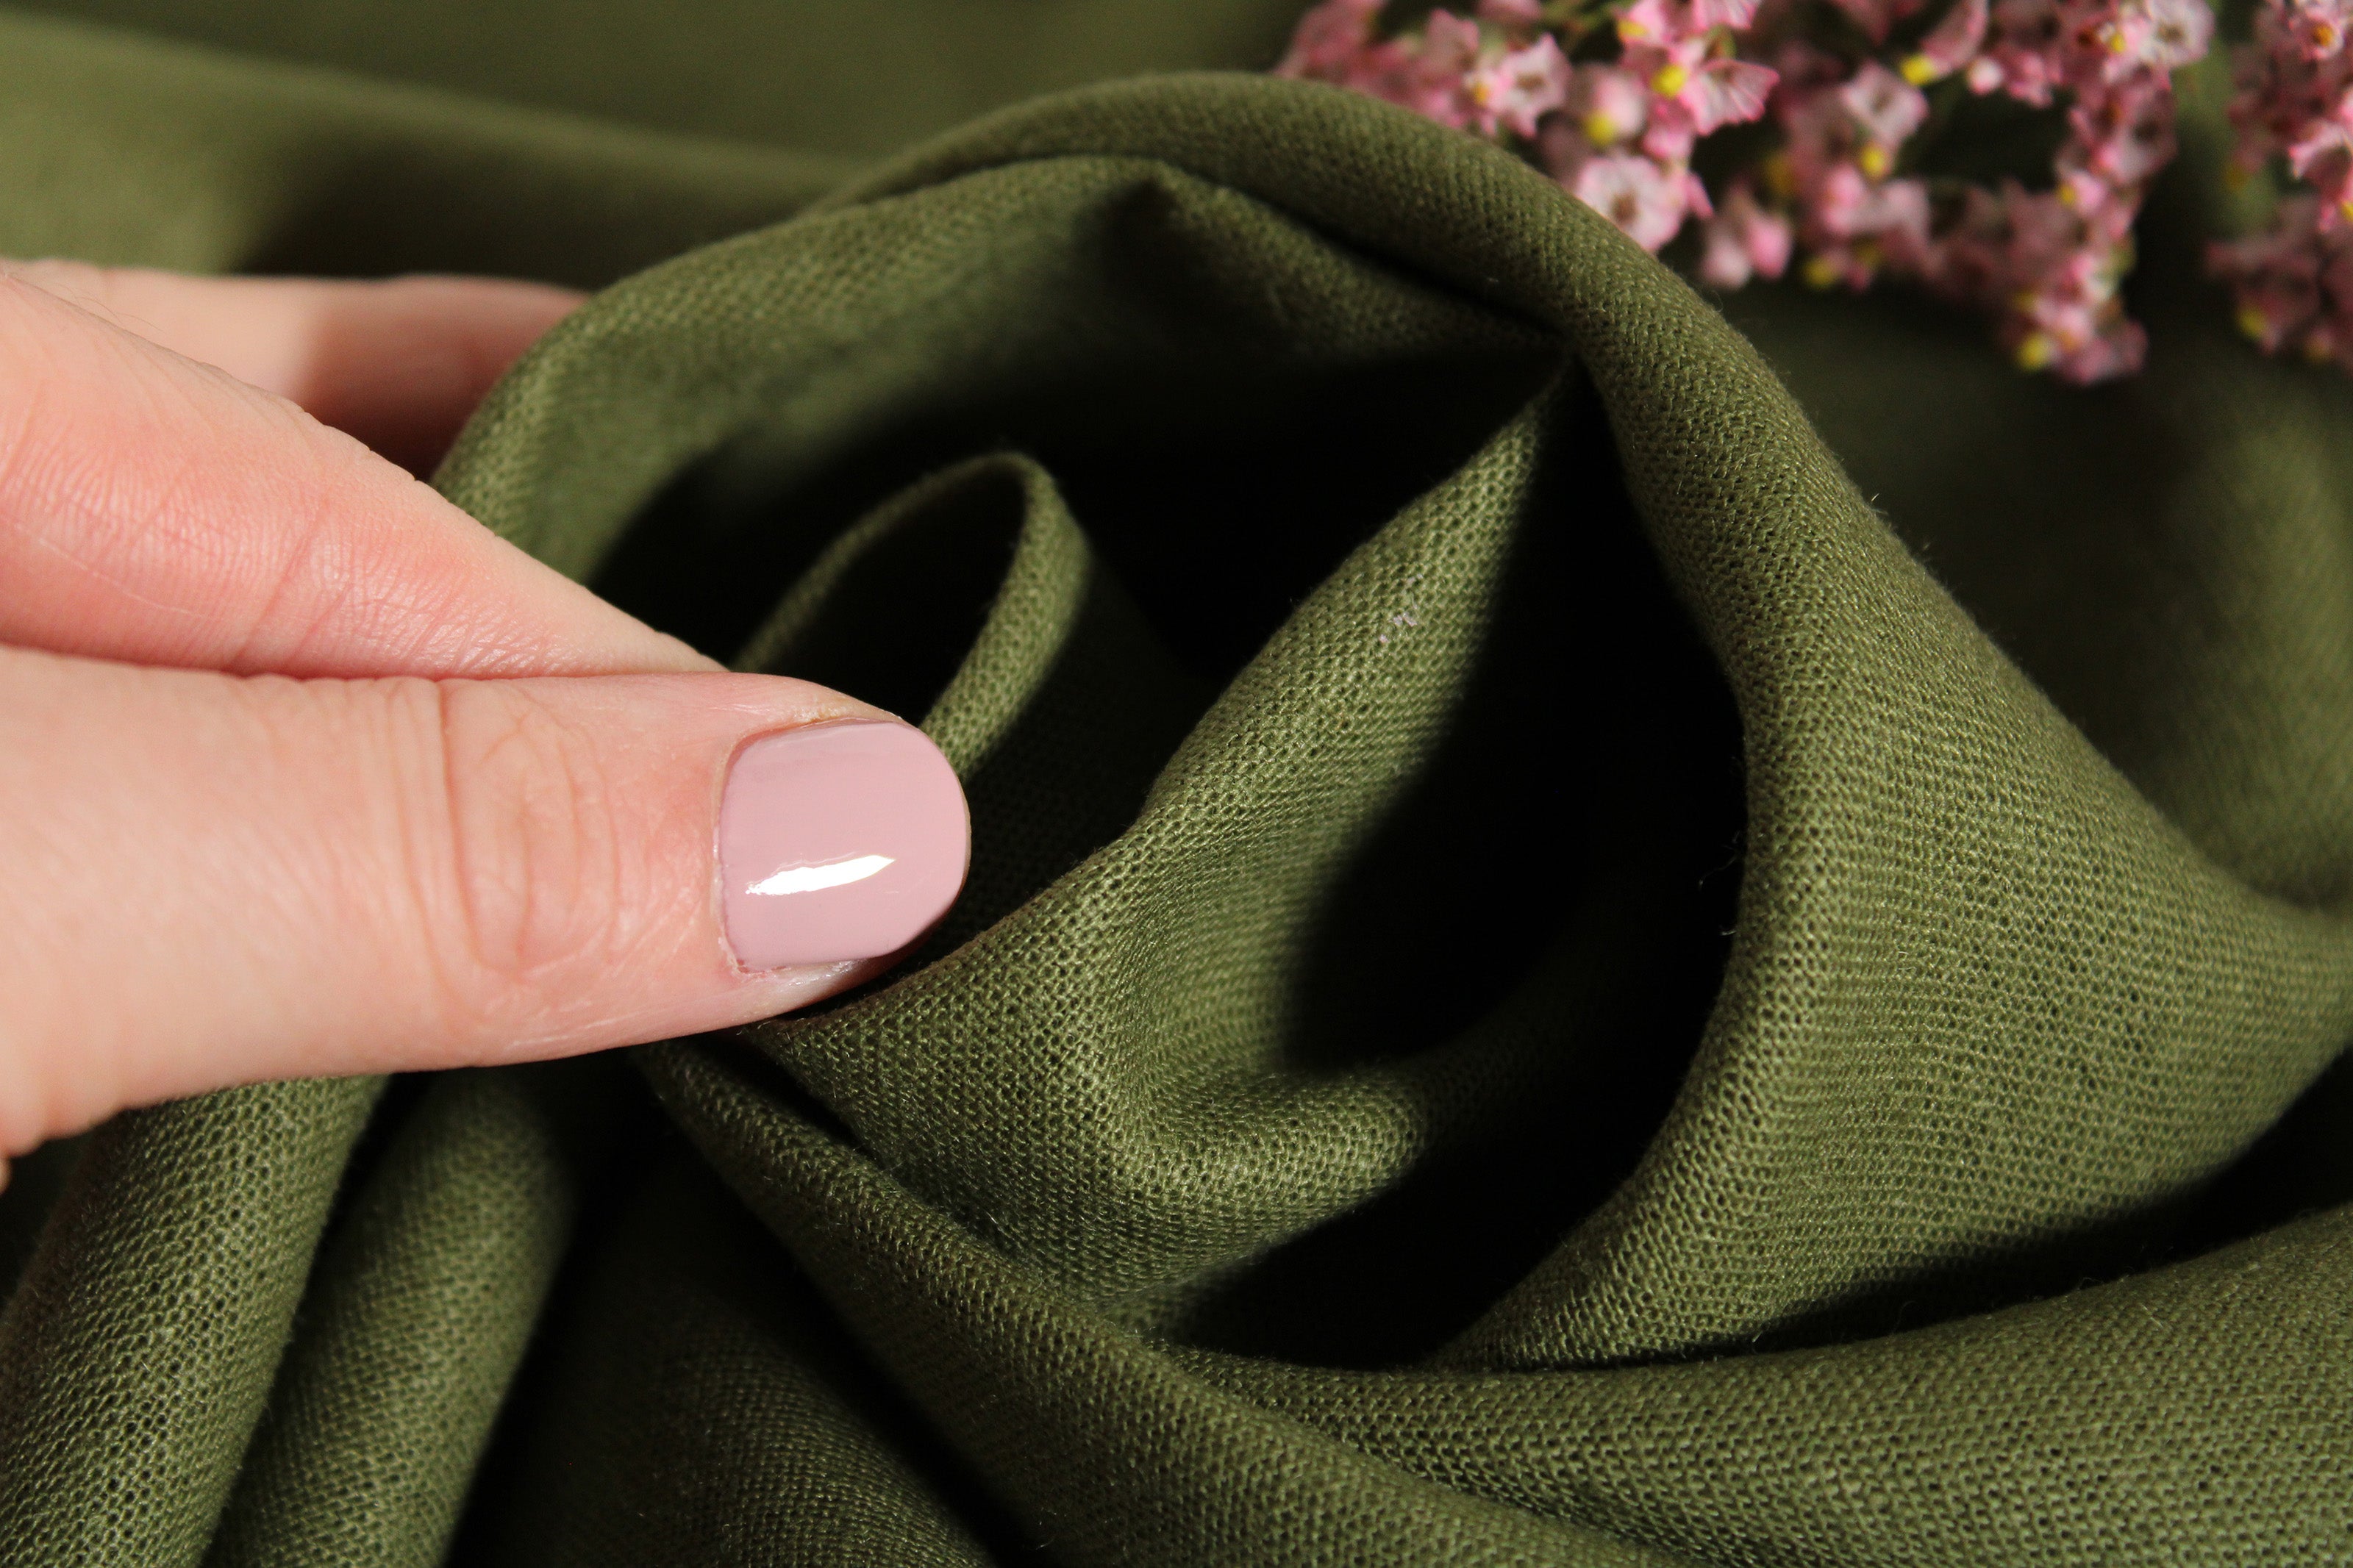 WHOLESALE 100% linen fabric / Linen Fabric Wholesale Direct / Linen by the Bolt / Terrarium moss linen fabric